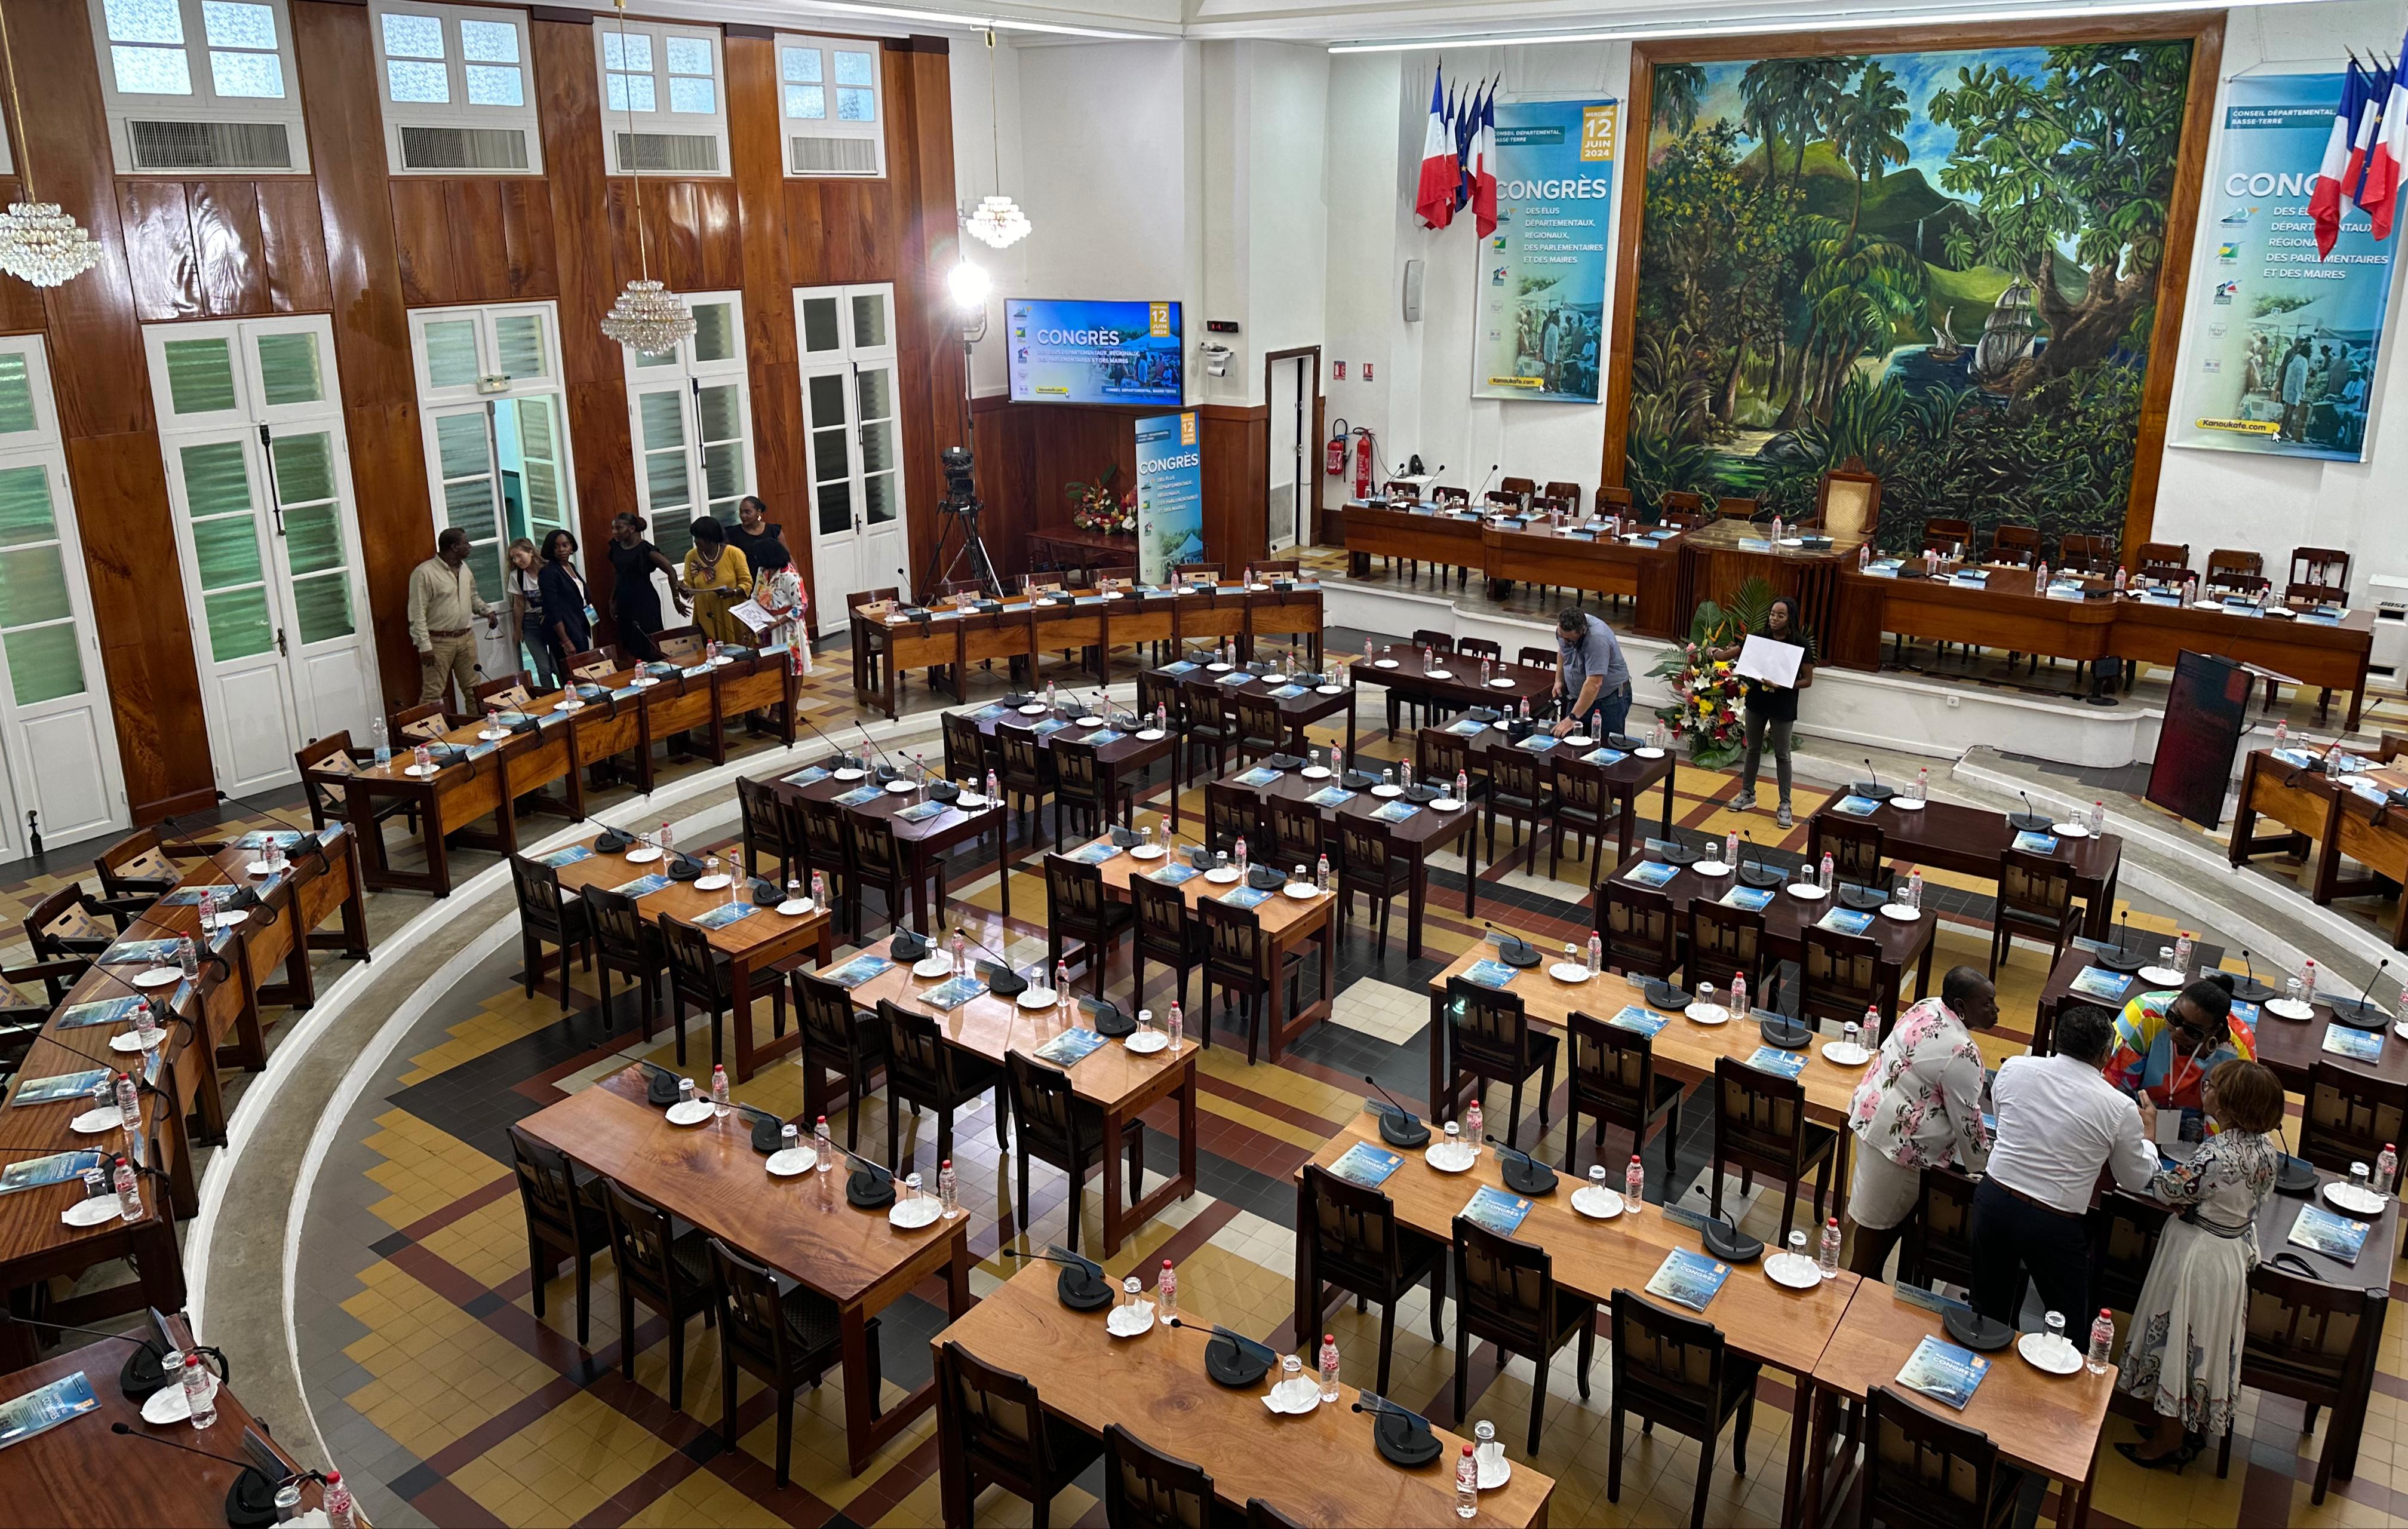     Suivez en direct le 18e Congrès des élus de Guadeloupe

